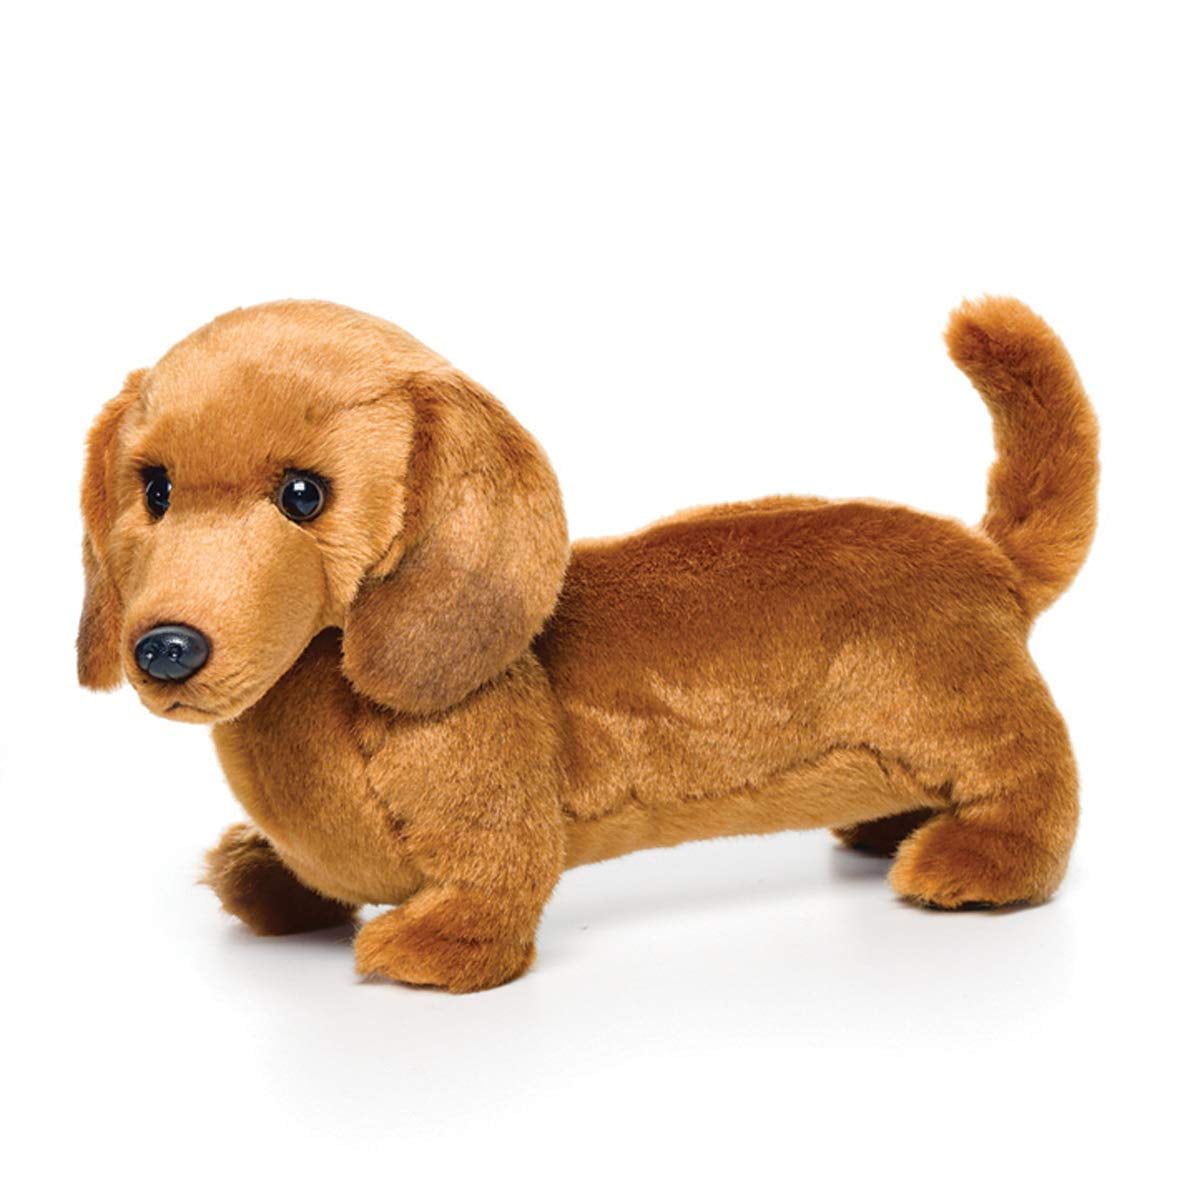 Stuffed Animal Daschund Plush Weiner Dog 8 Inch Flopsie Teddy Toy Super Soft Pup 